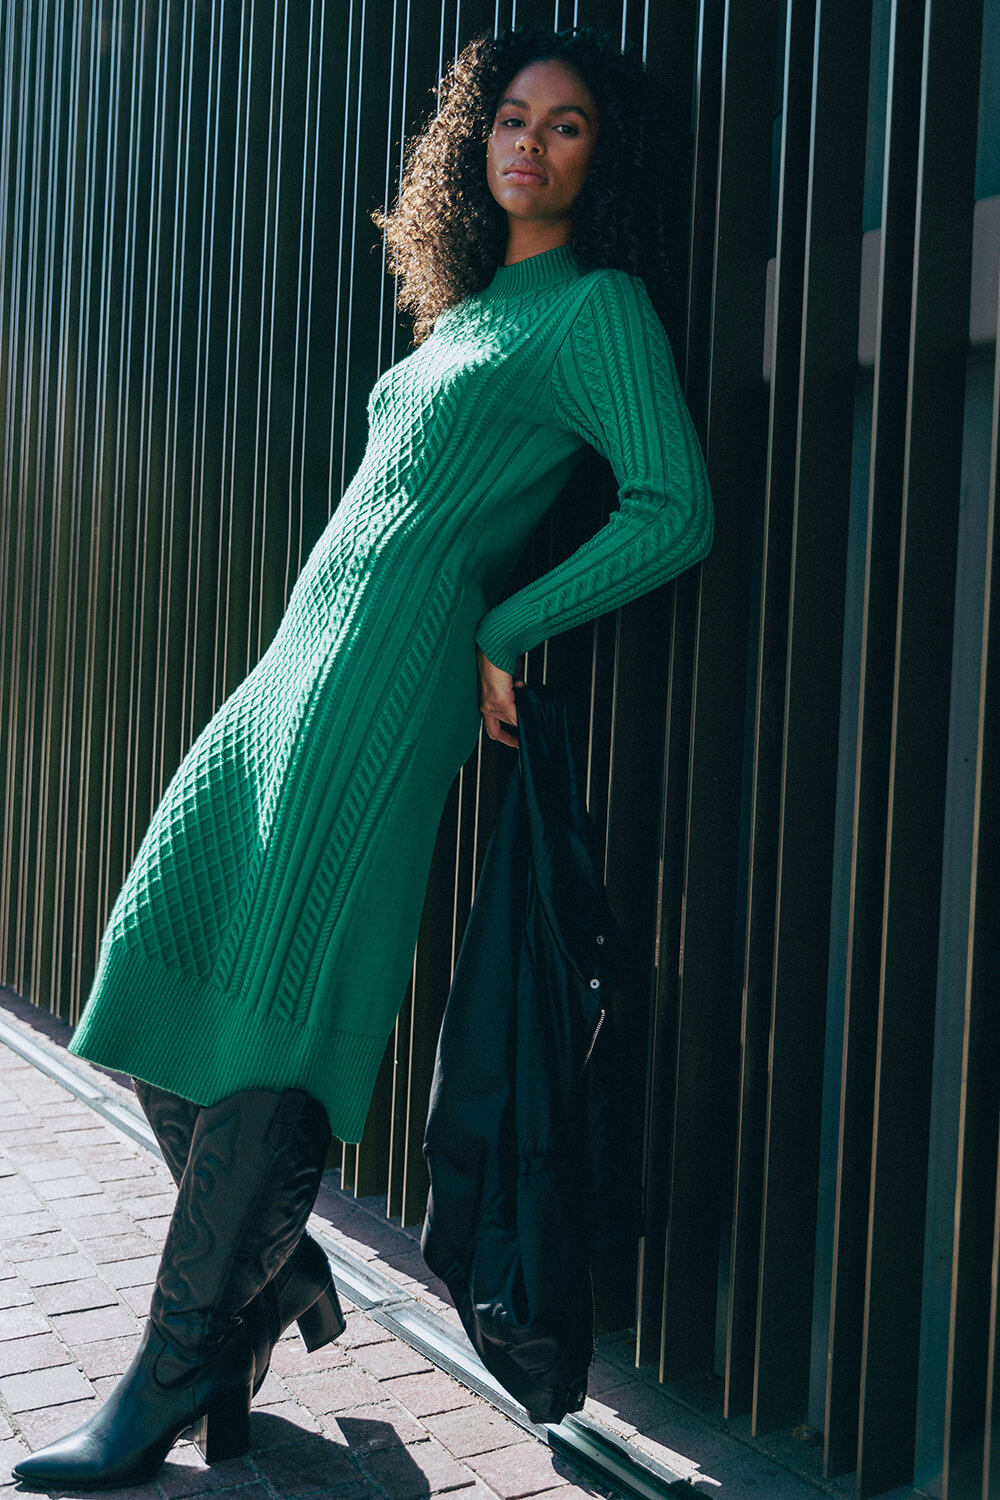 Green Cable Knit Midi Jumper Dress